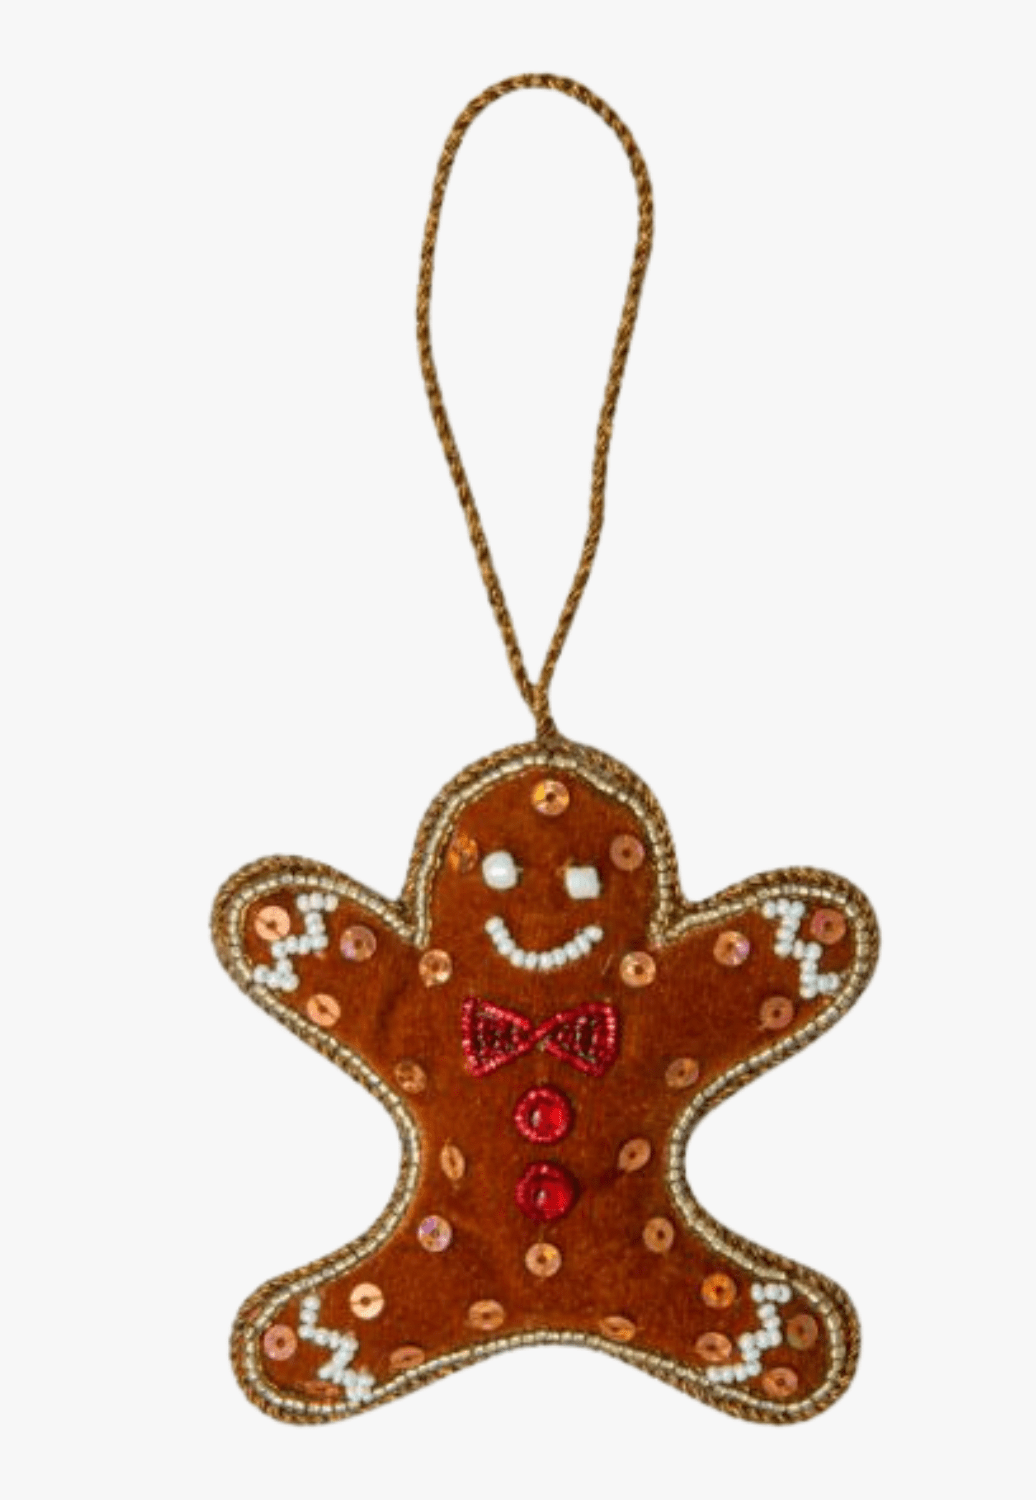 Myra Bag ACCESSORIES-General Multi Myra Bag Dancing Gingerbread Man Christmas Ornament